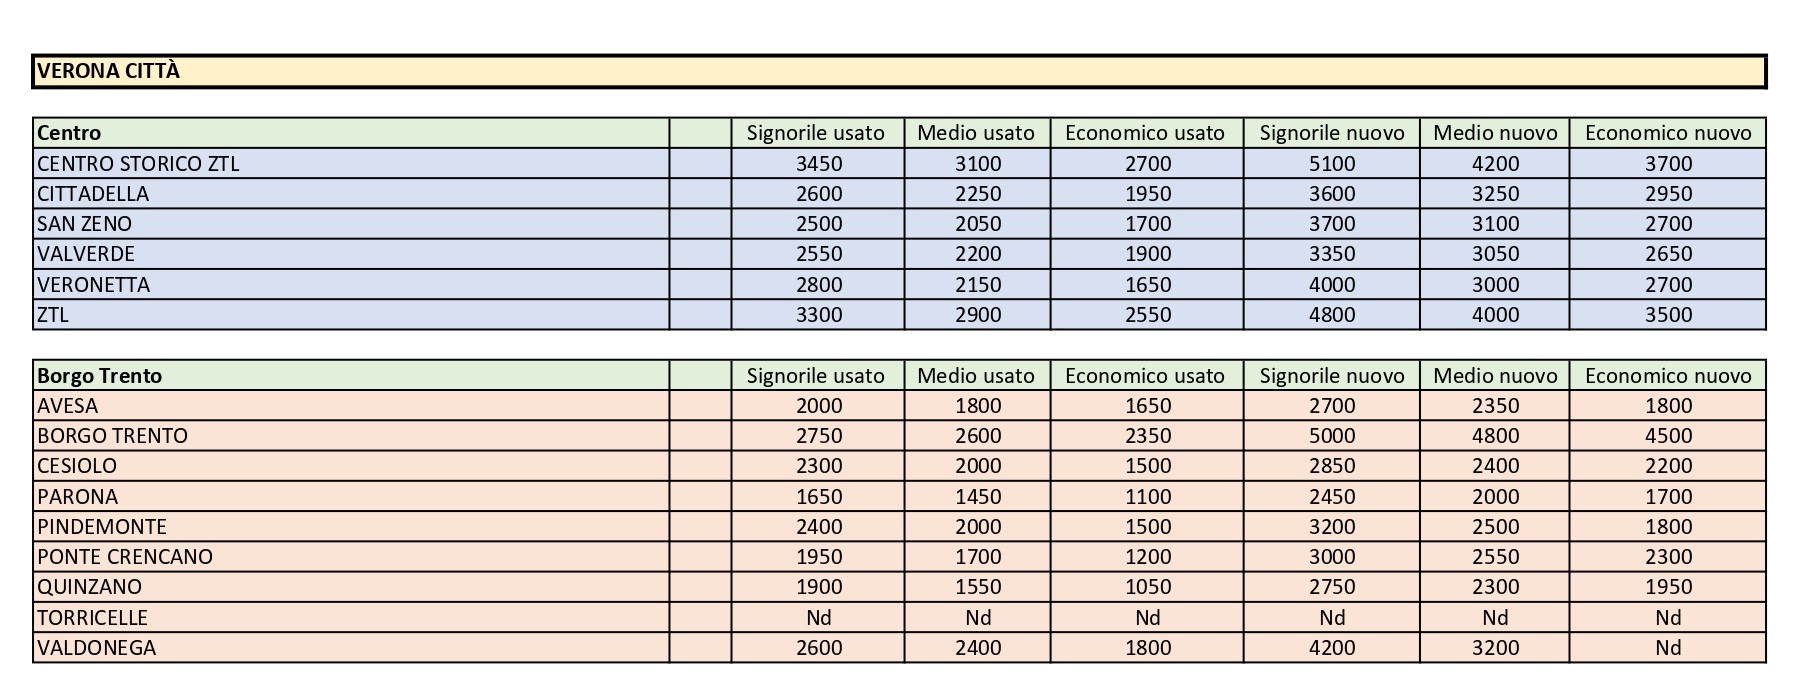 Tecnocasa, ecco le quotazioni aggiornate del mercato immobiliare a Verona. Prezzi su dell’1,6%